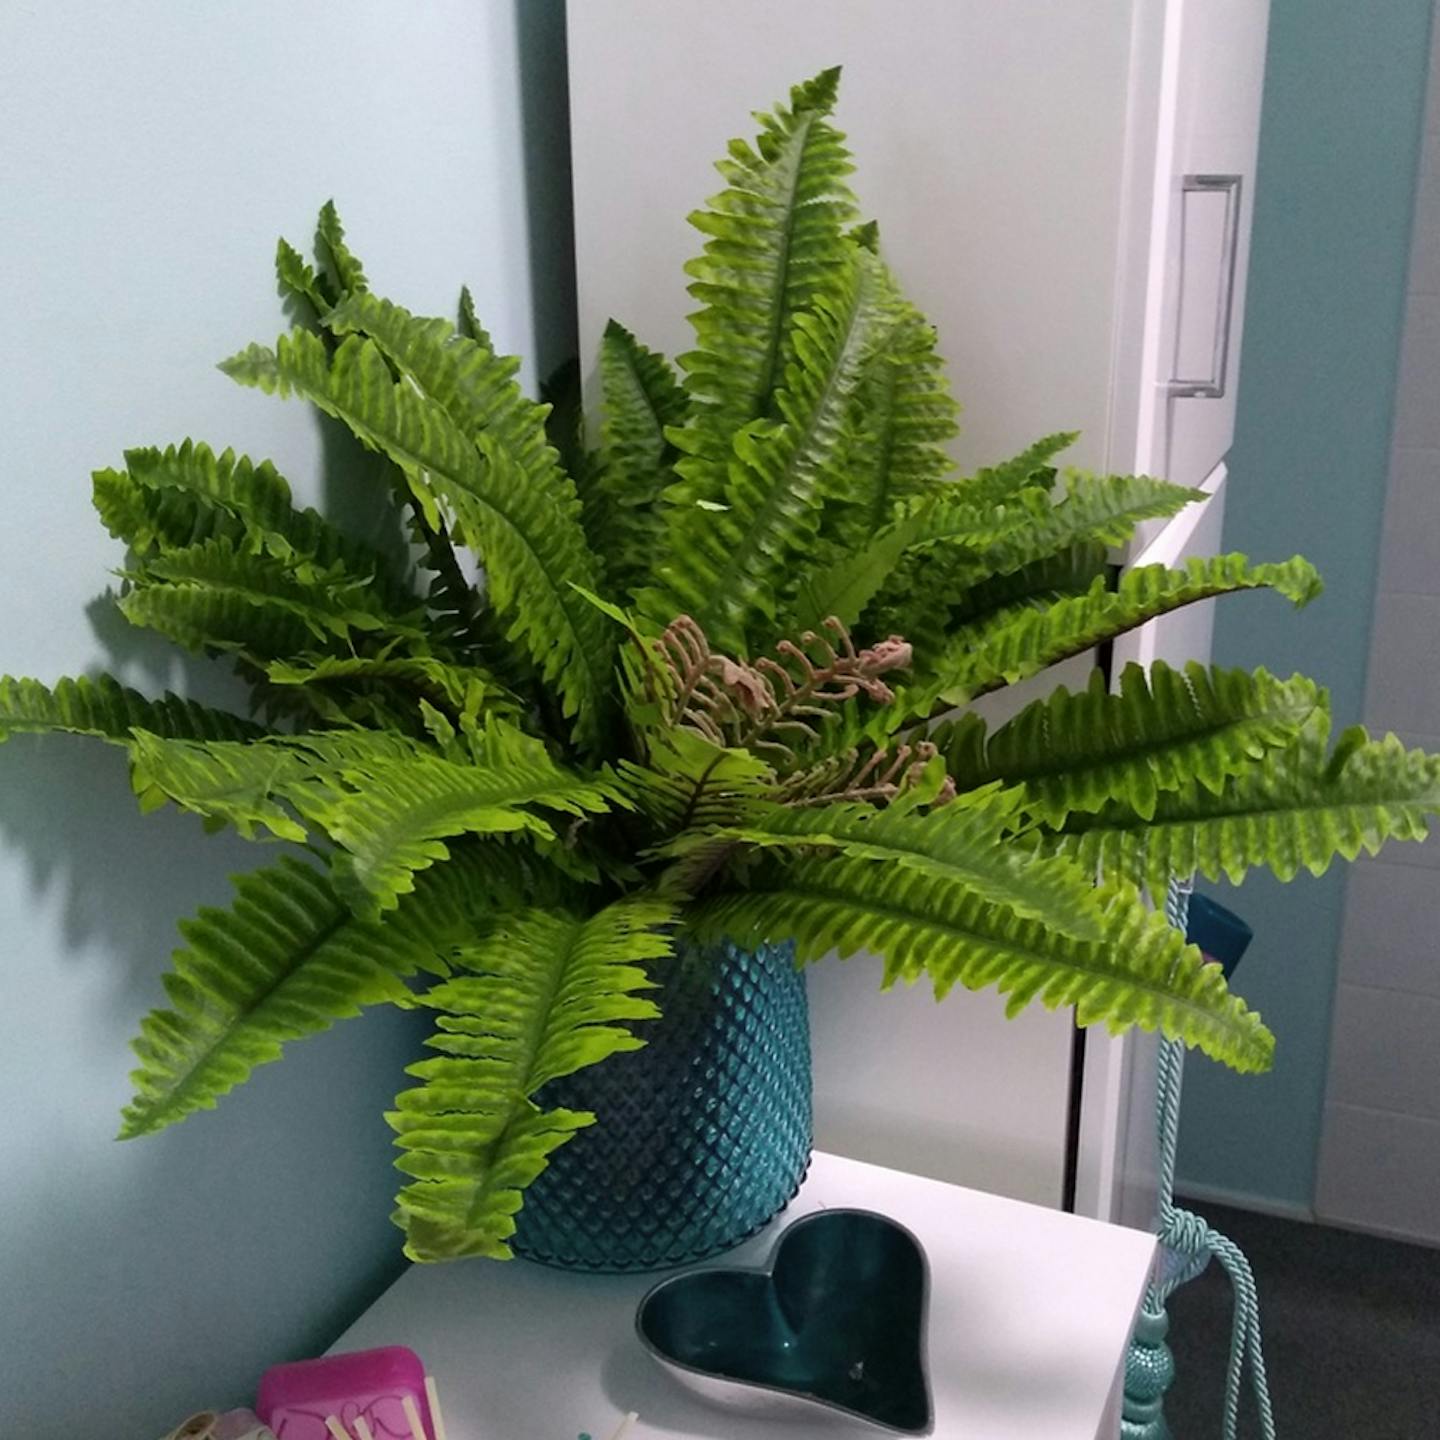 Artificial Boston fern in decorative blue planter